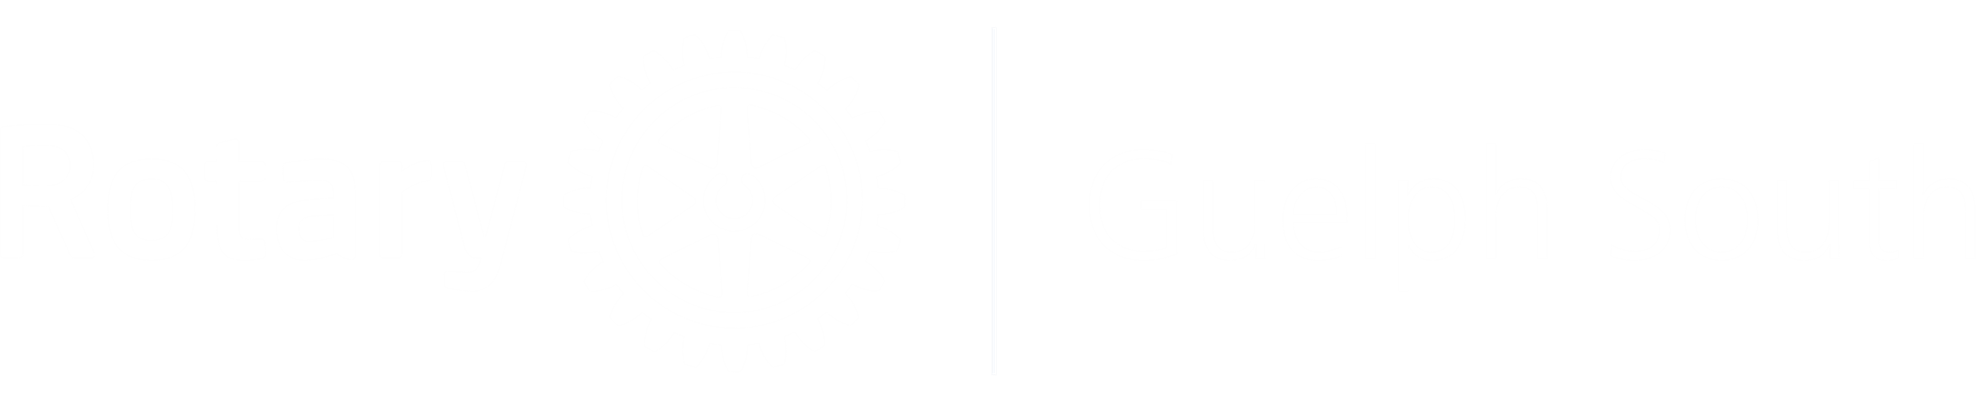 Guelph South logo